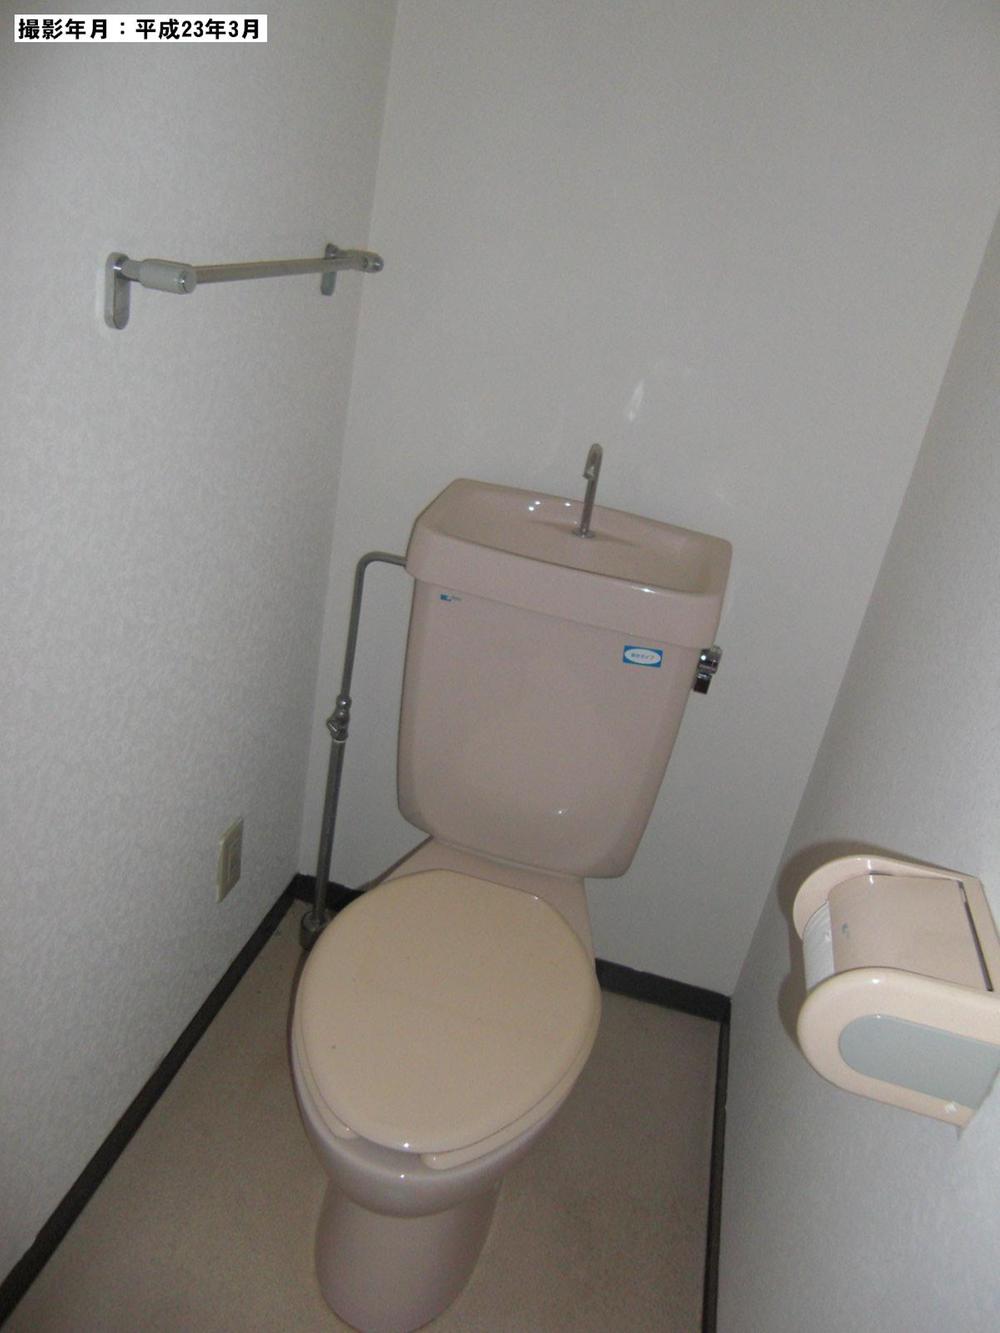 Toilet. Indoor (March 2011) shooting